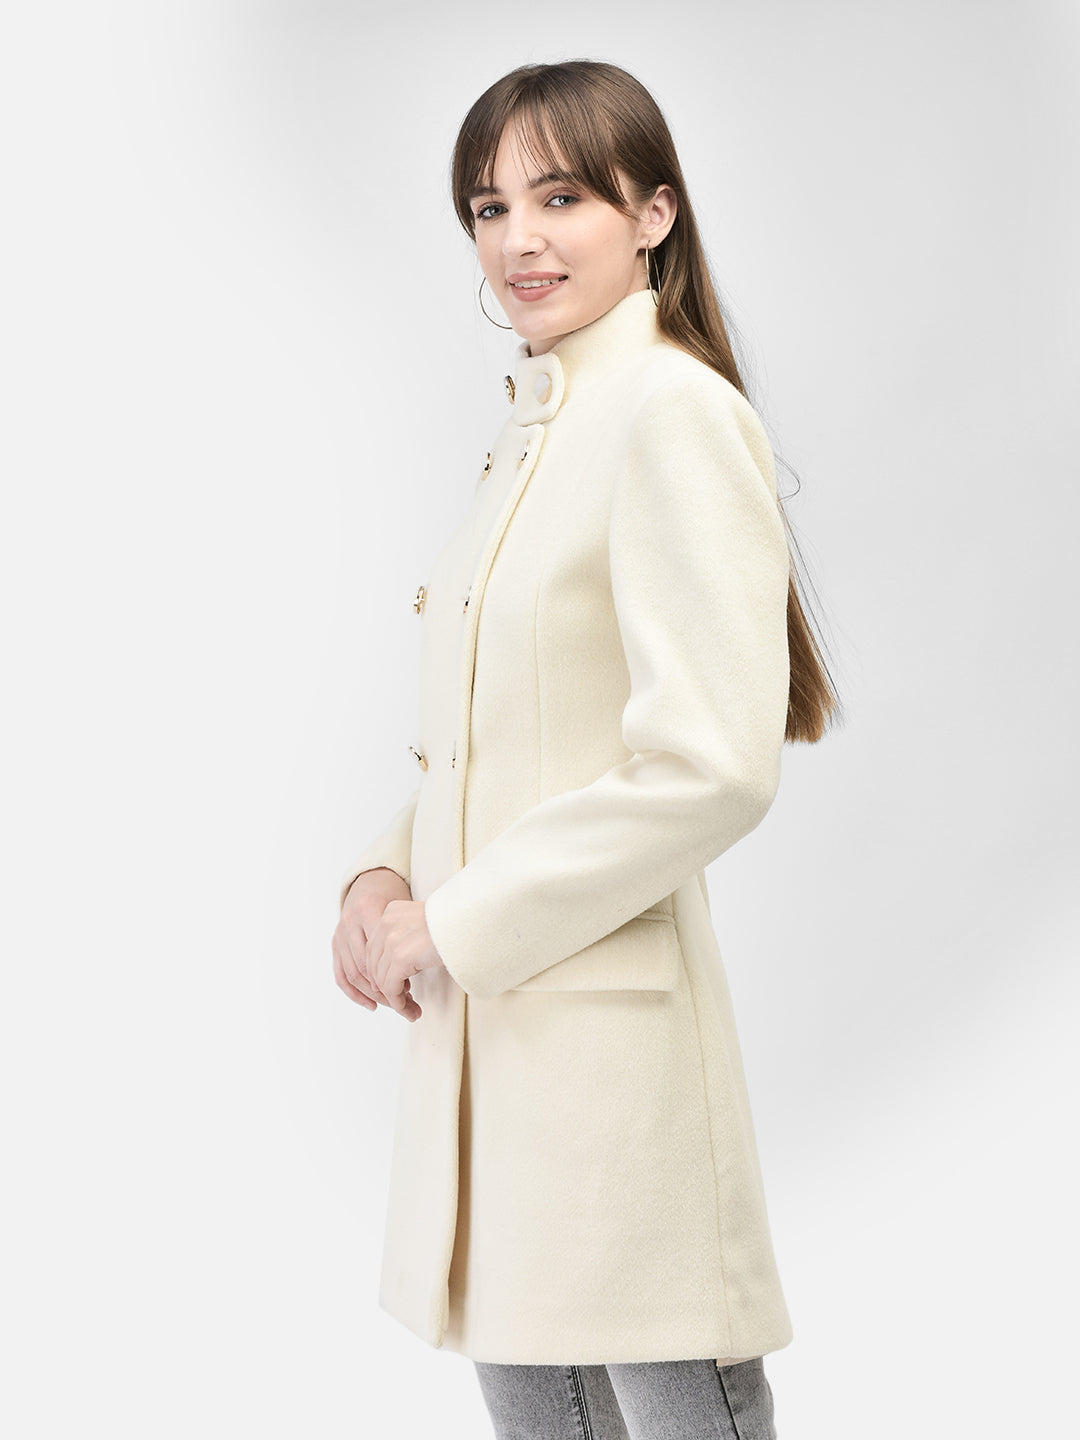 Off White Mandarin Collar Overcoat-Women Coats-Crimsoune Club